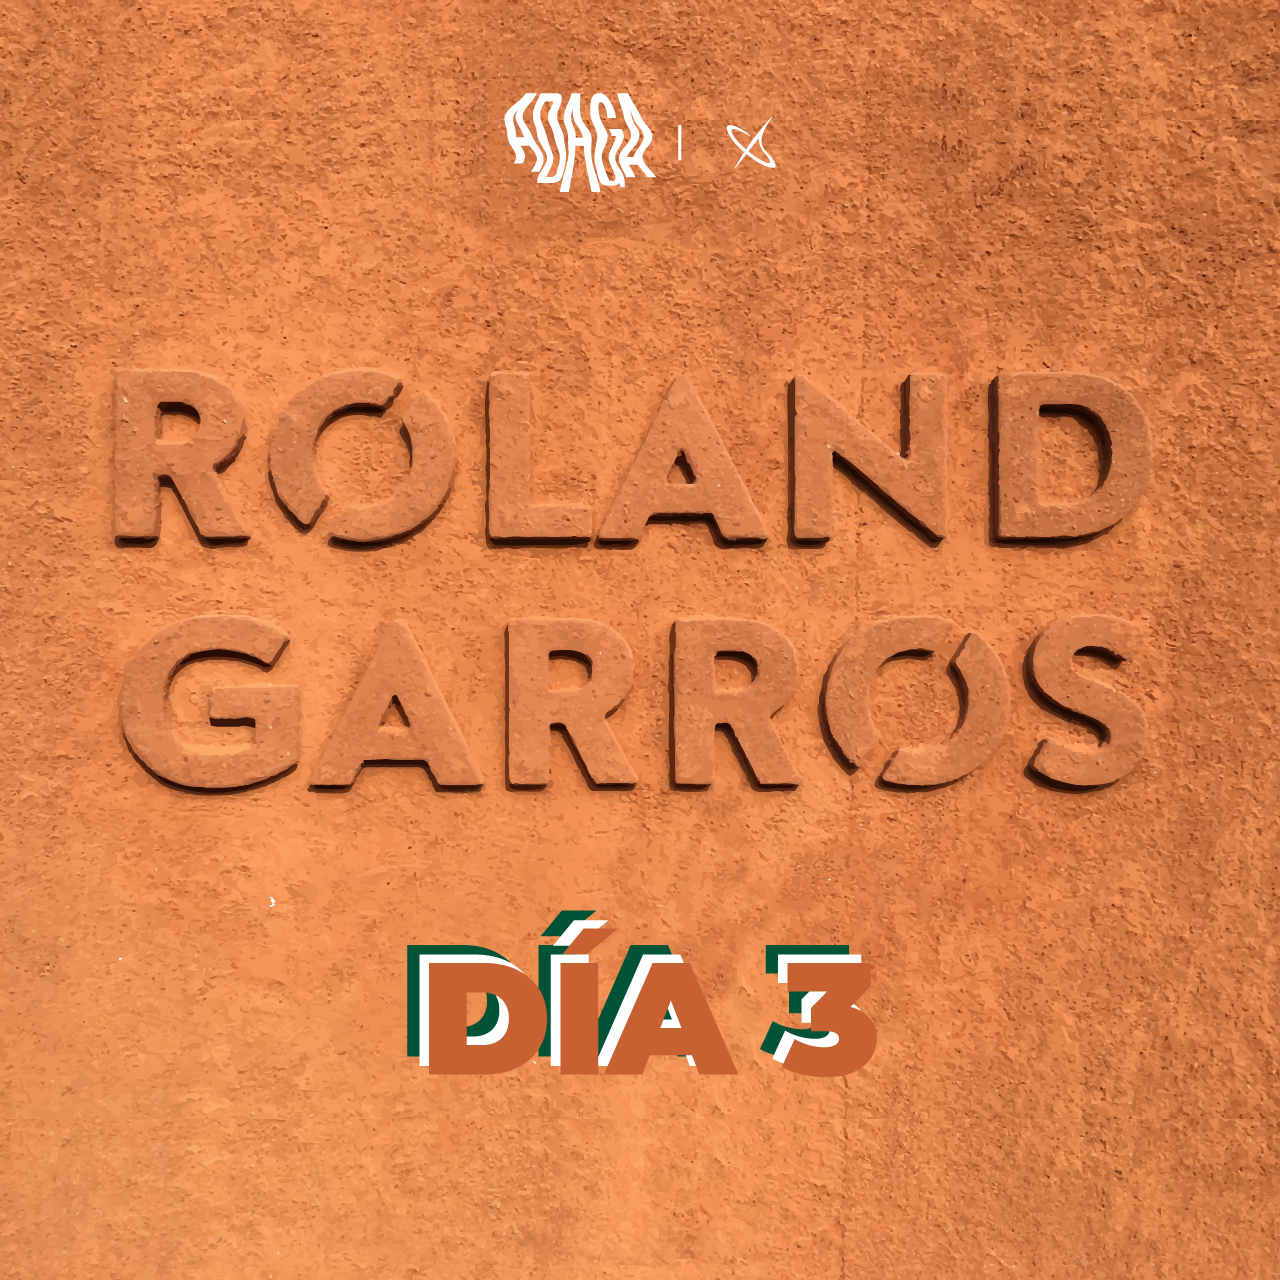 Imagen del logo de Roland Garros, Abierto de tenis de campo que se juega en Francia en la superficie de polvo de ladrillo